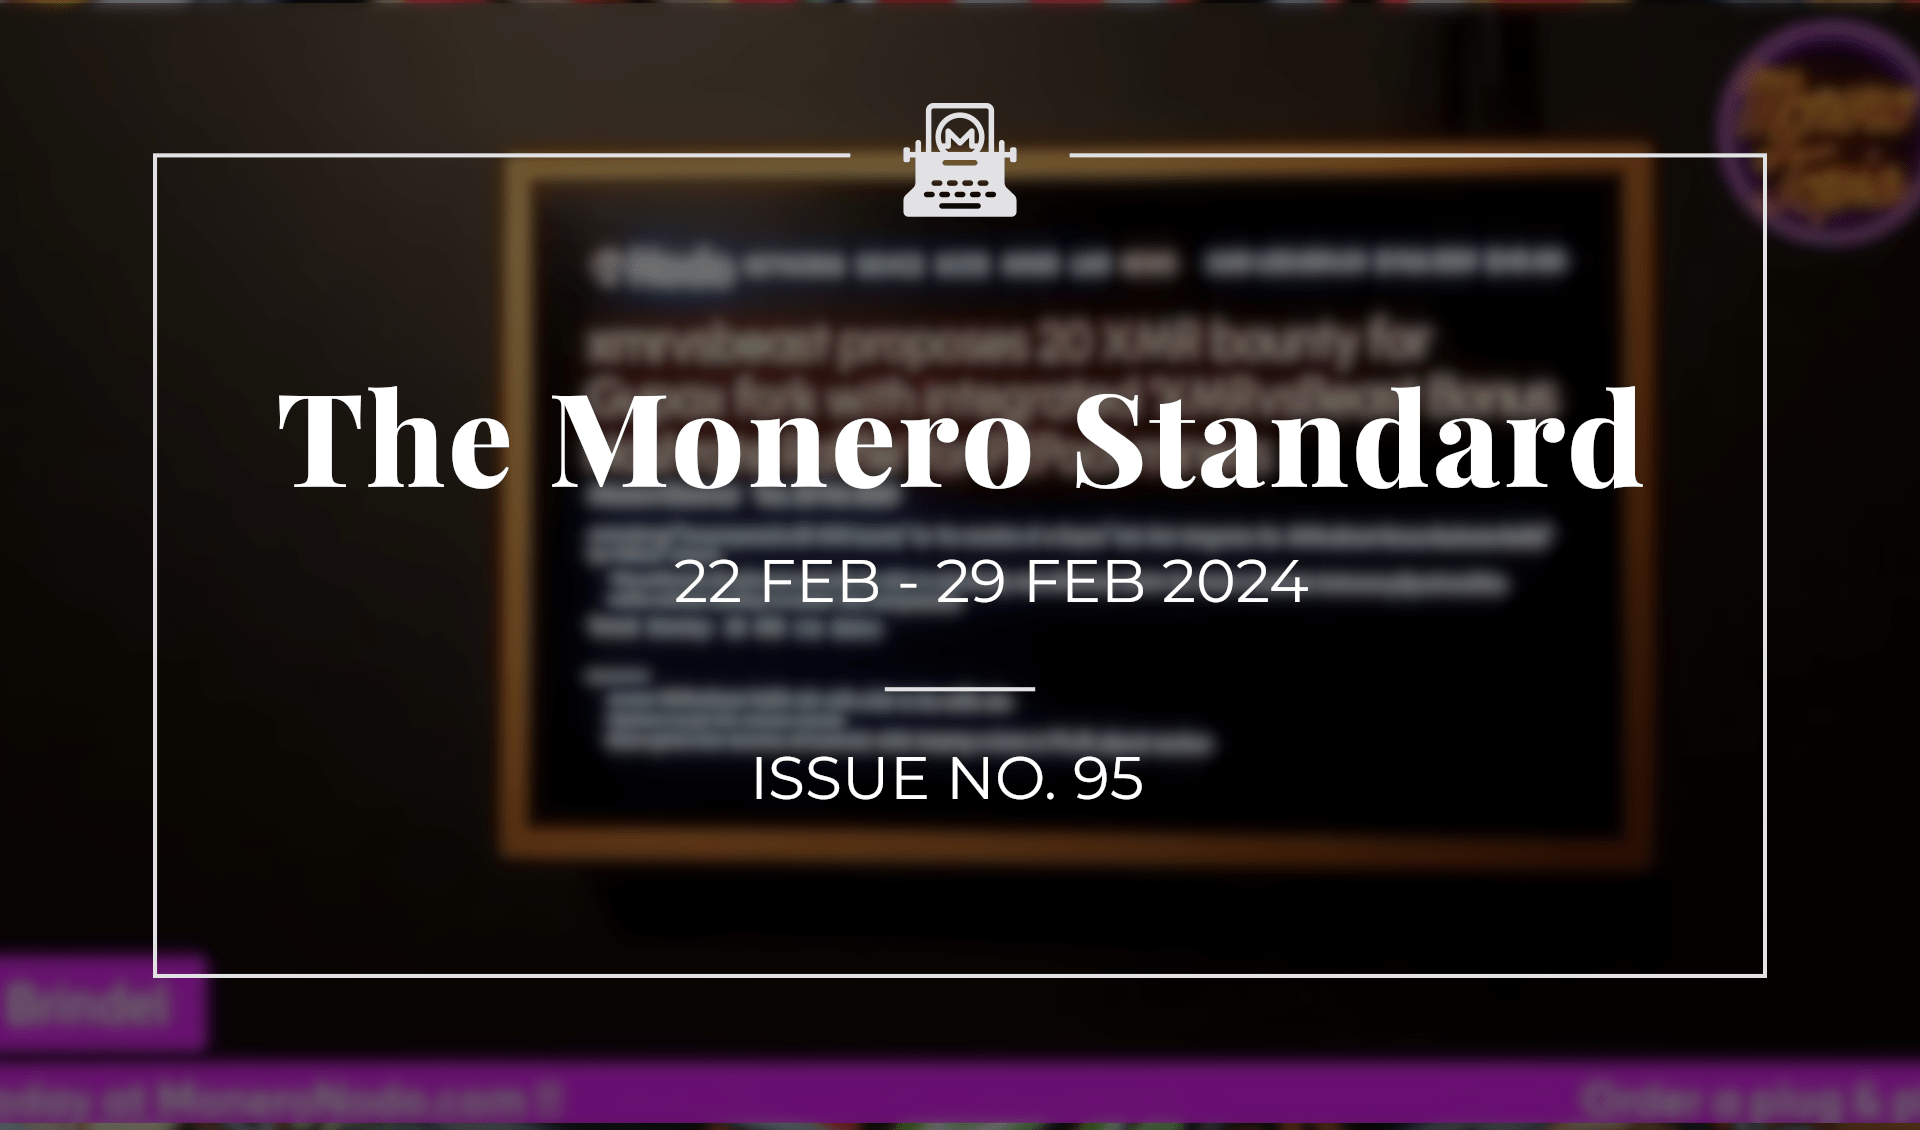 The Monero Standard #95: 2 Feb 2023 - 29 Feb 2024